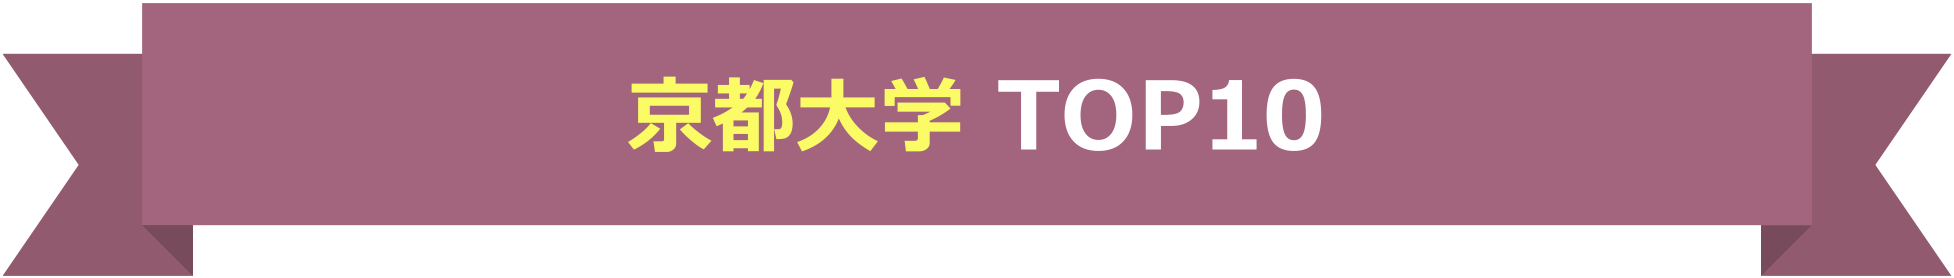 京都大学 TOP10